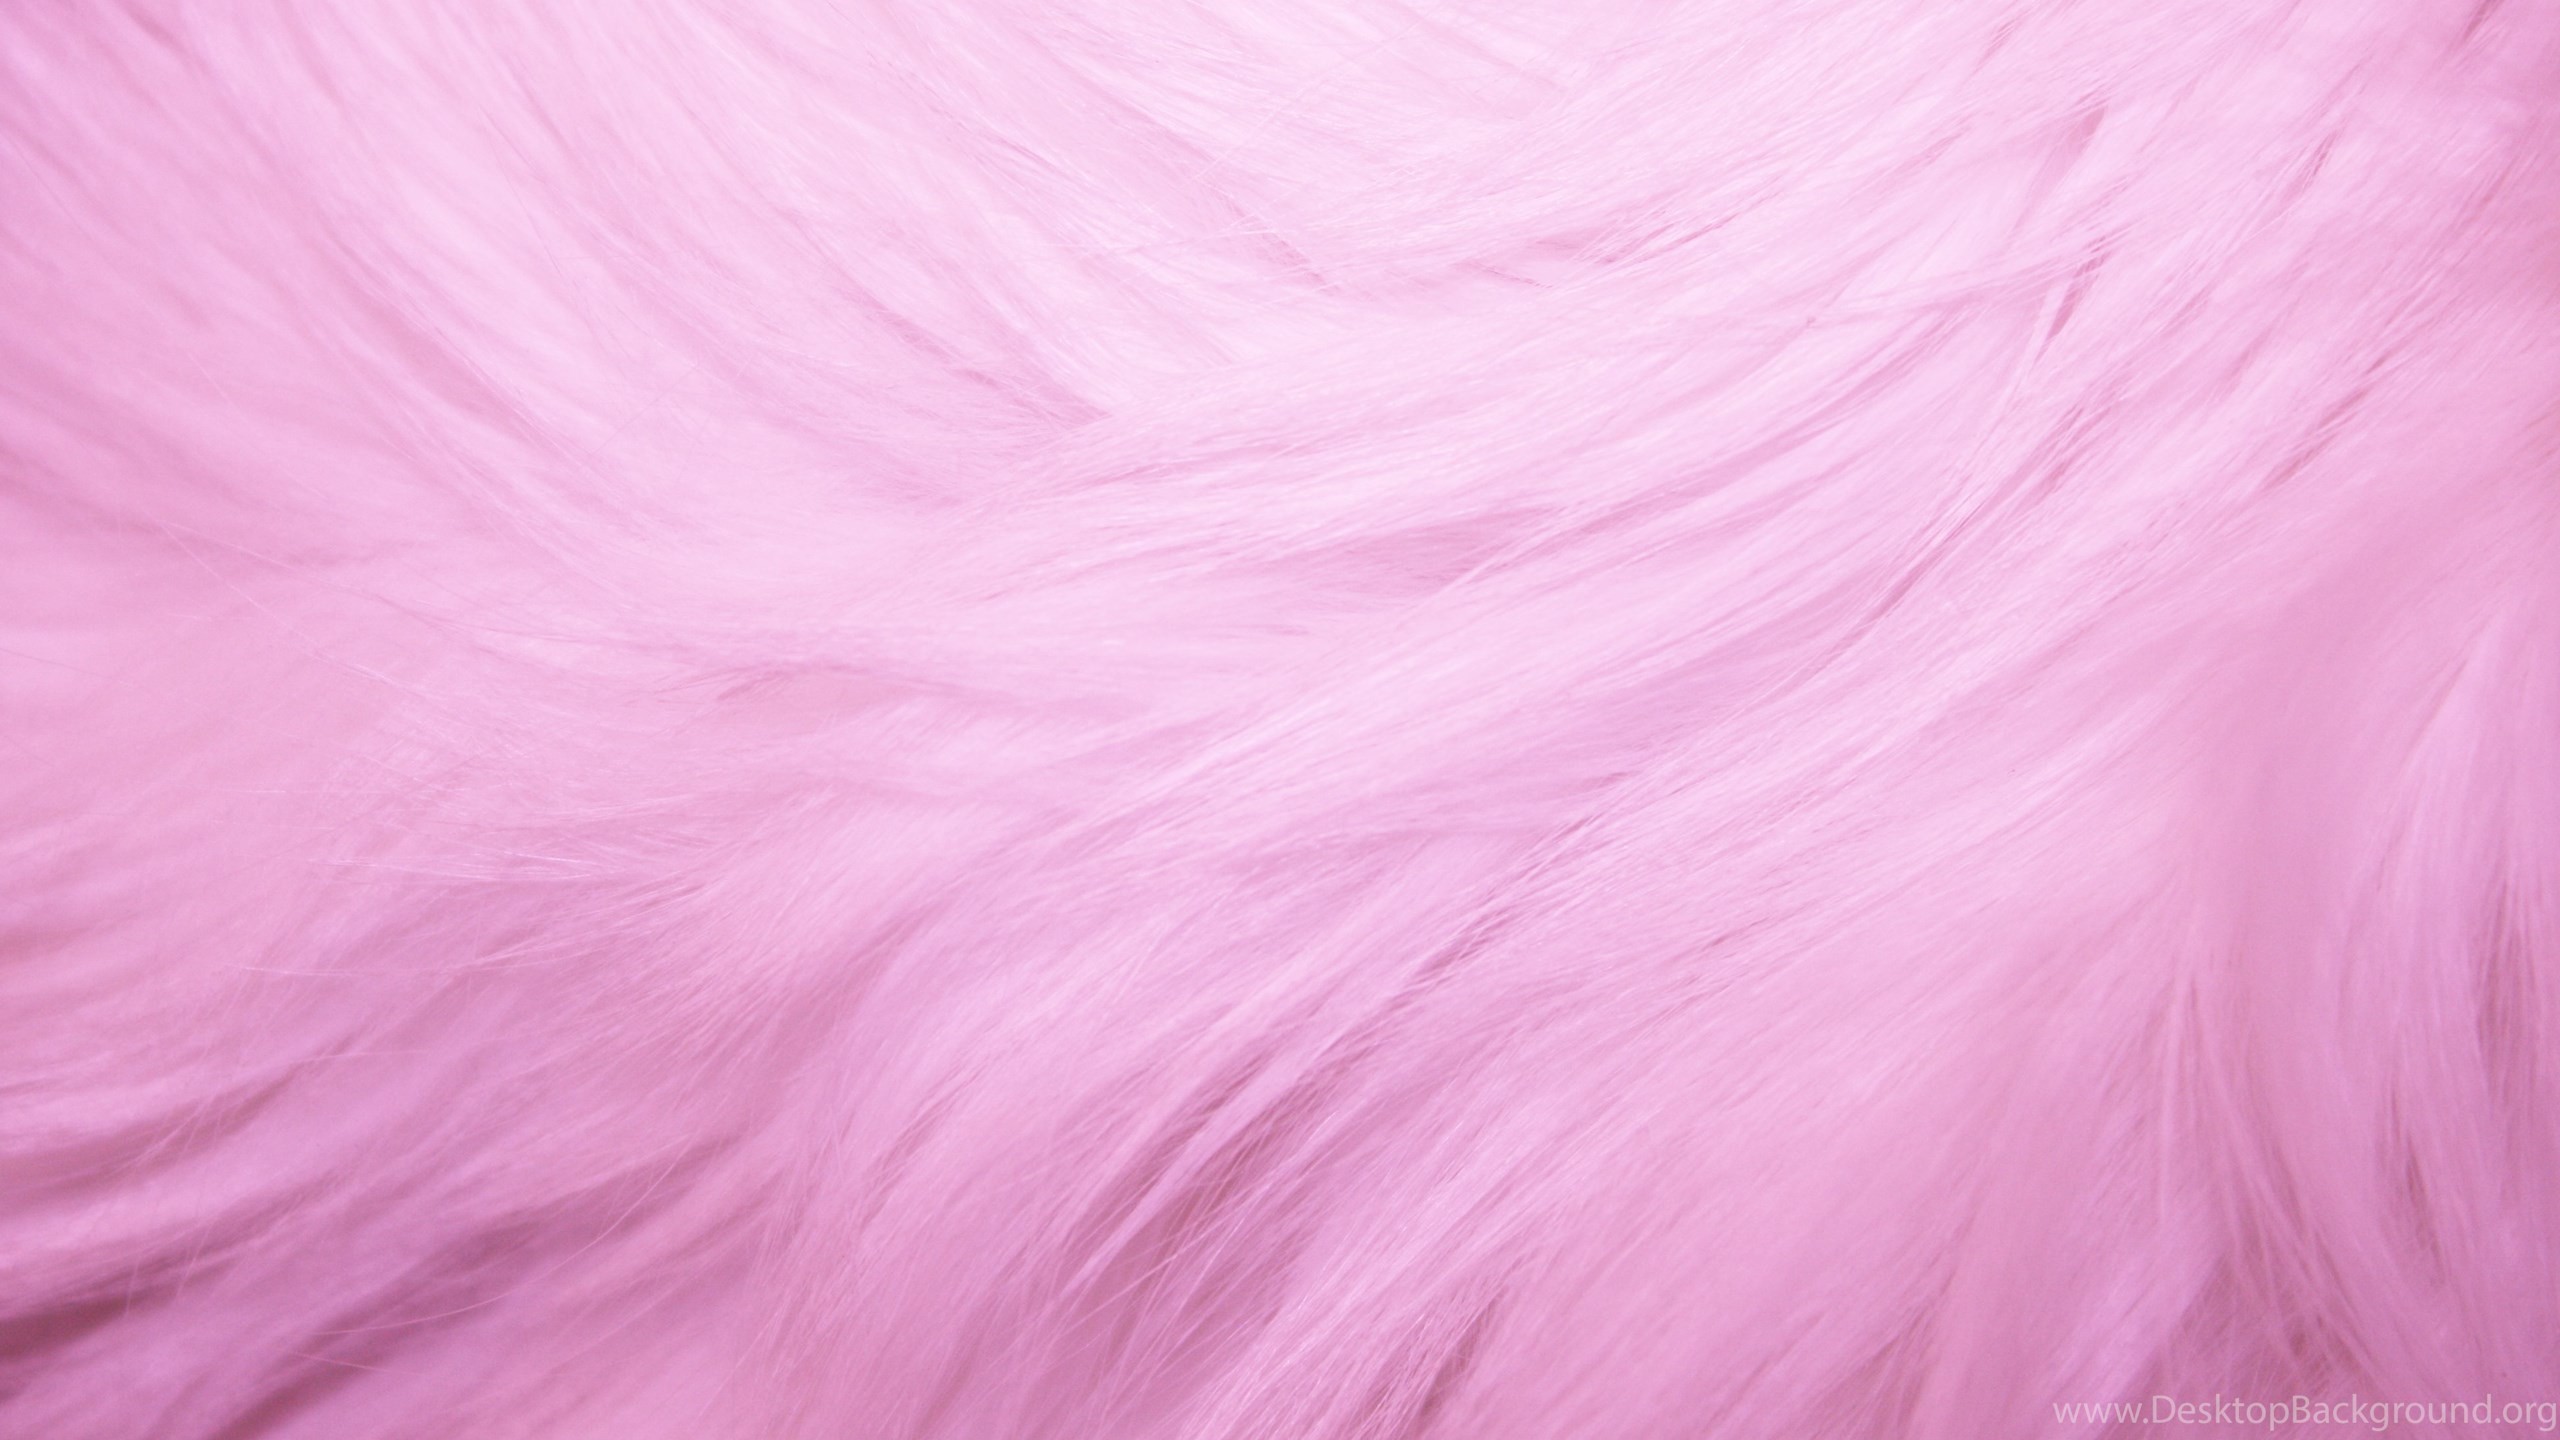 Netbook - High Resolution Pink Fur , HD Wallpaper & Backgrounds